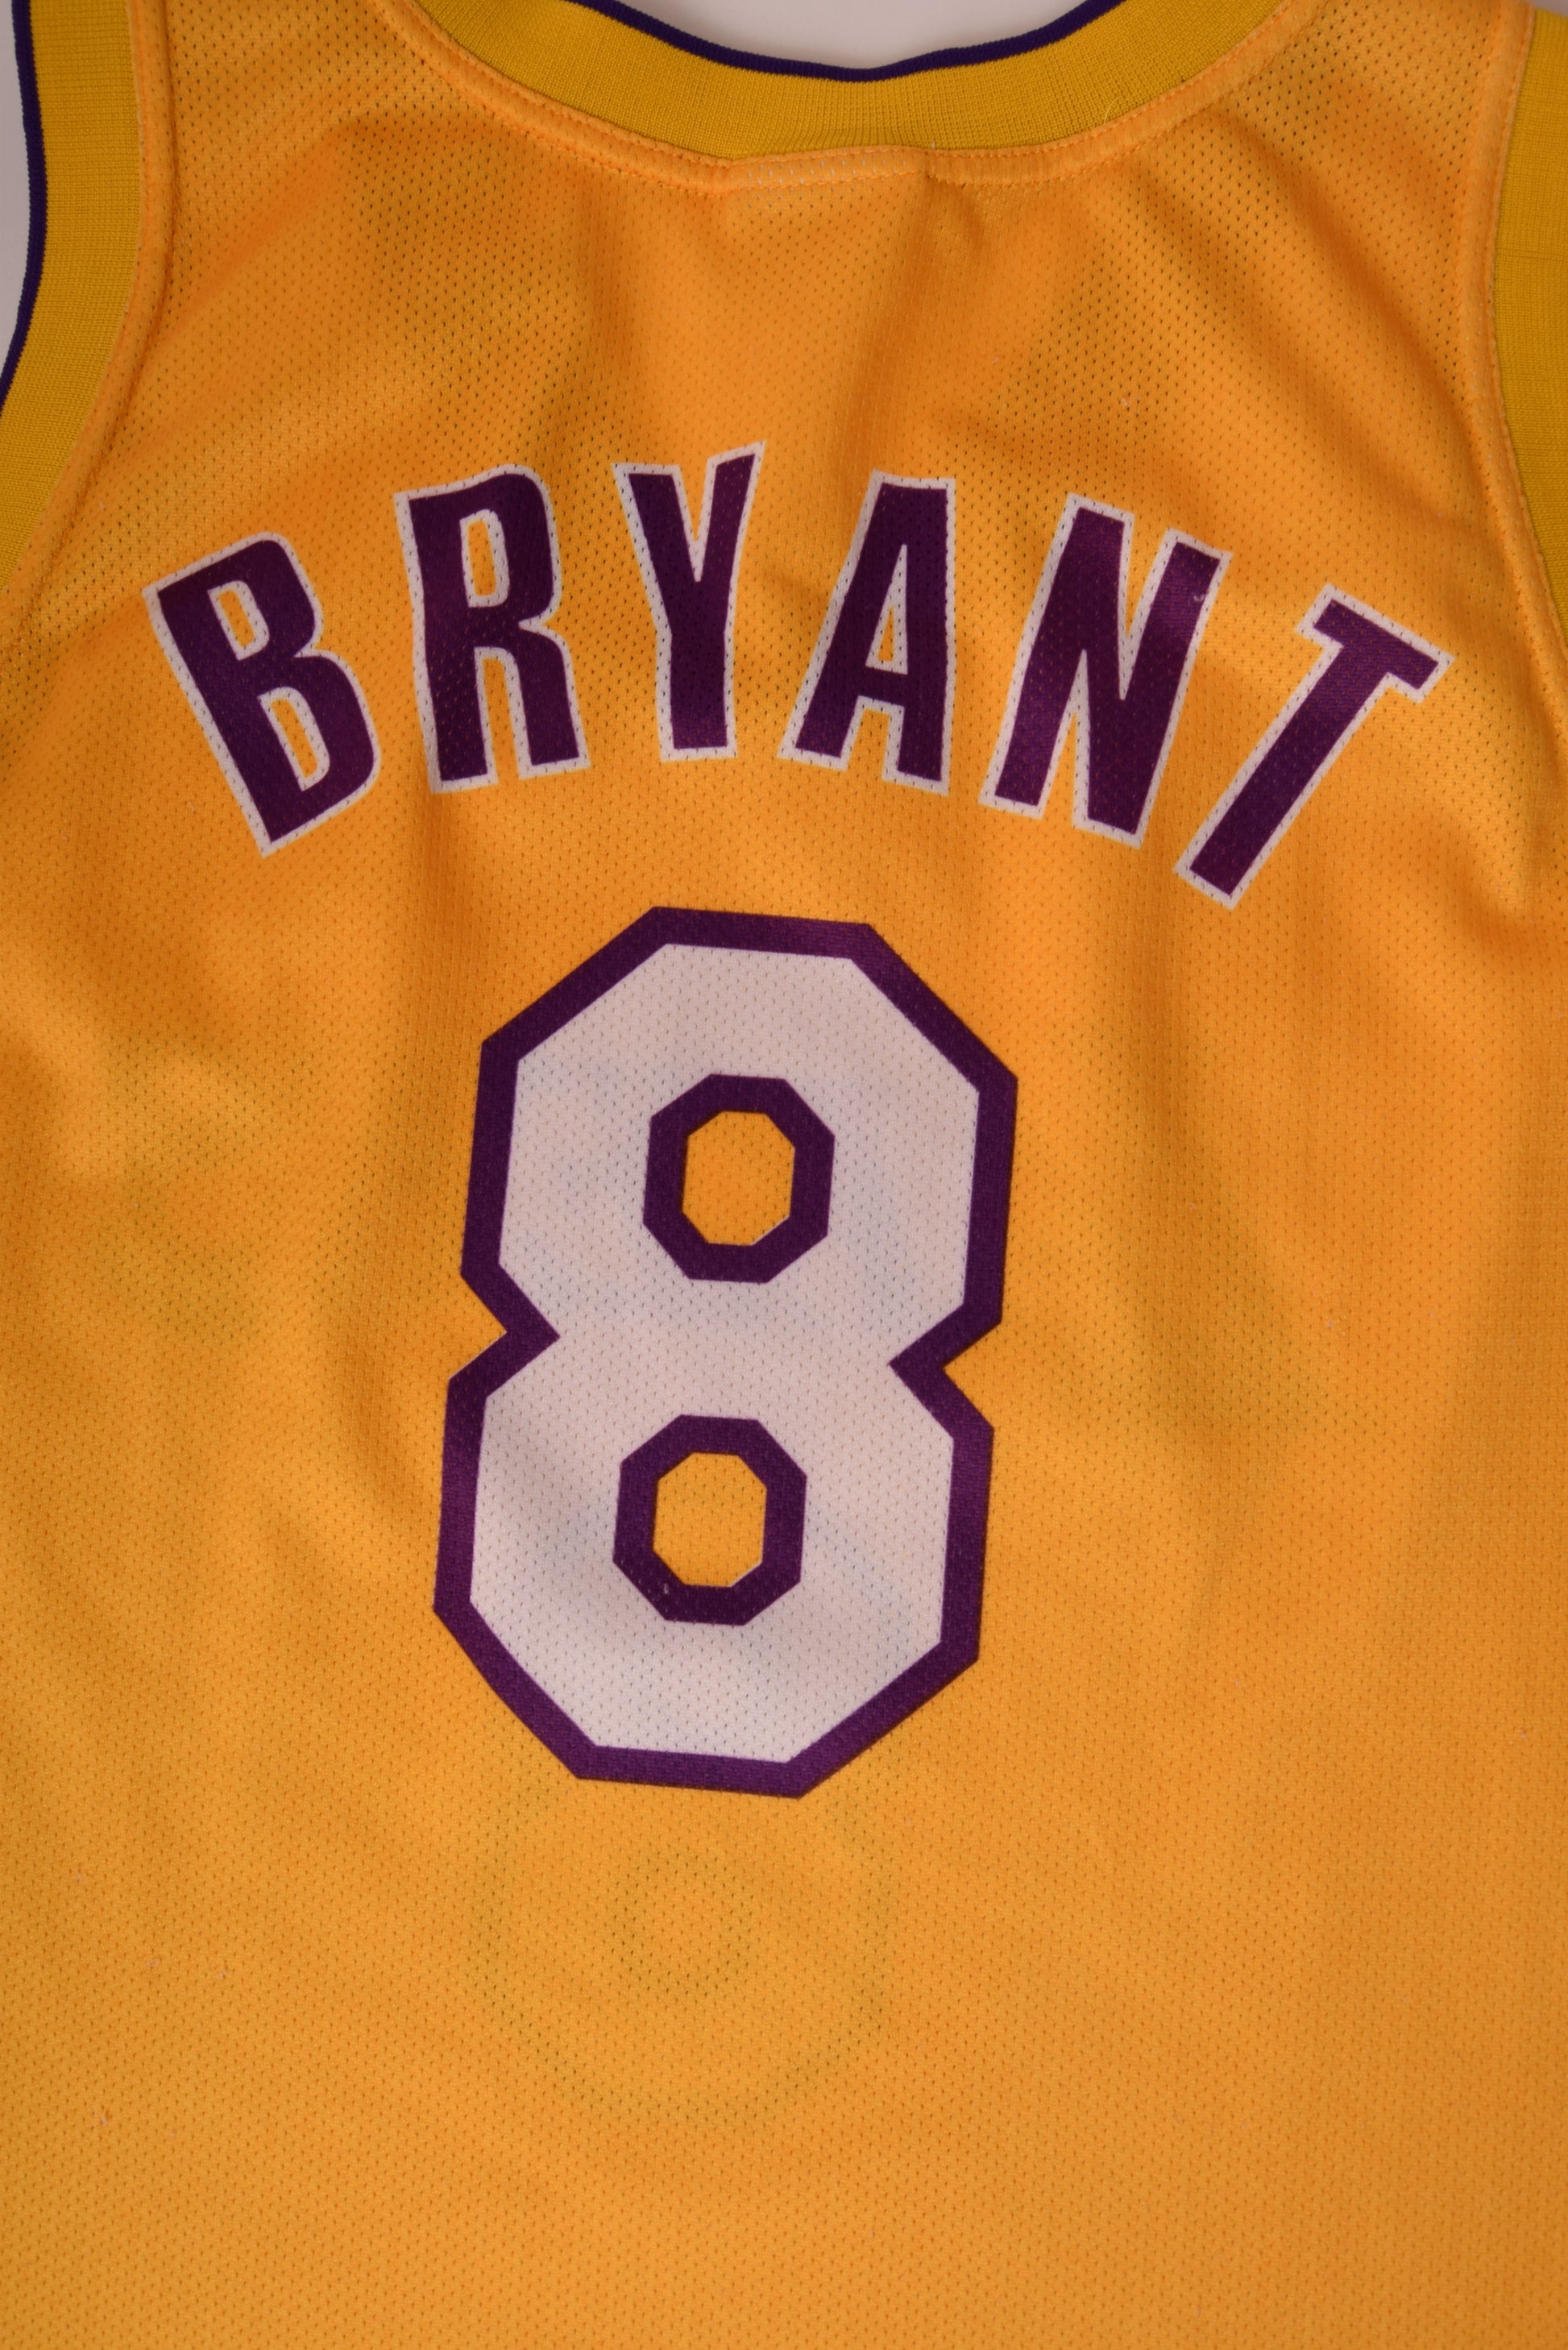 Champion, Shirts, Lakers Kobe Bryant 8 Vintage Champion Jersey